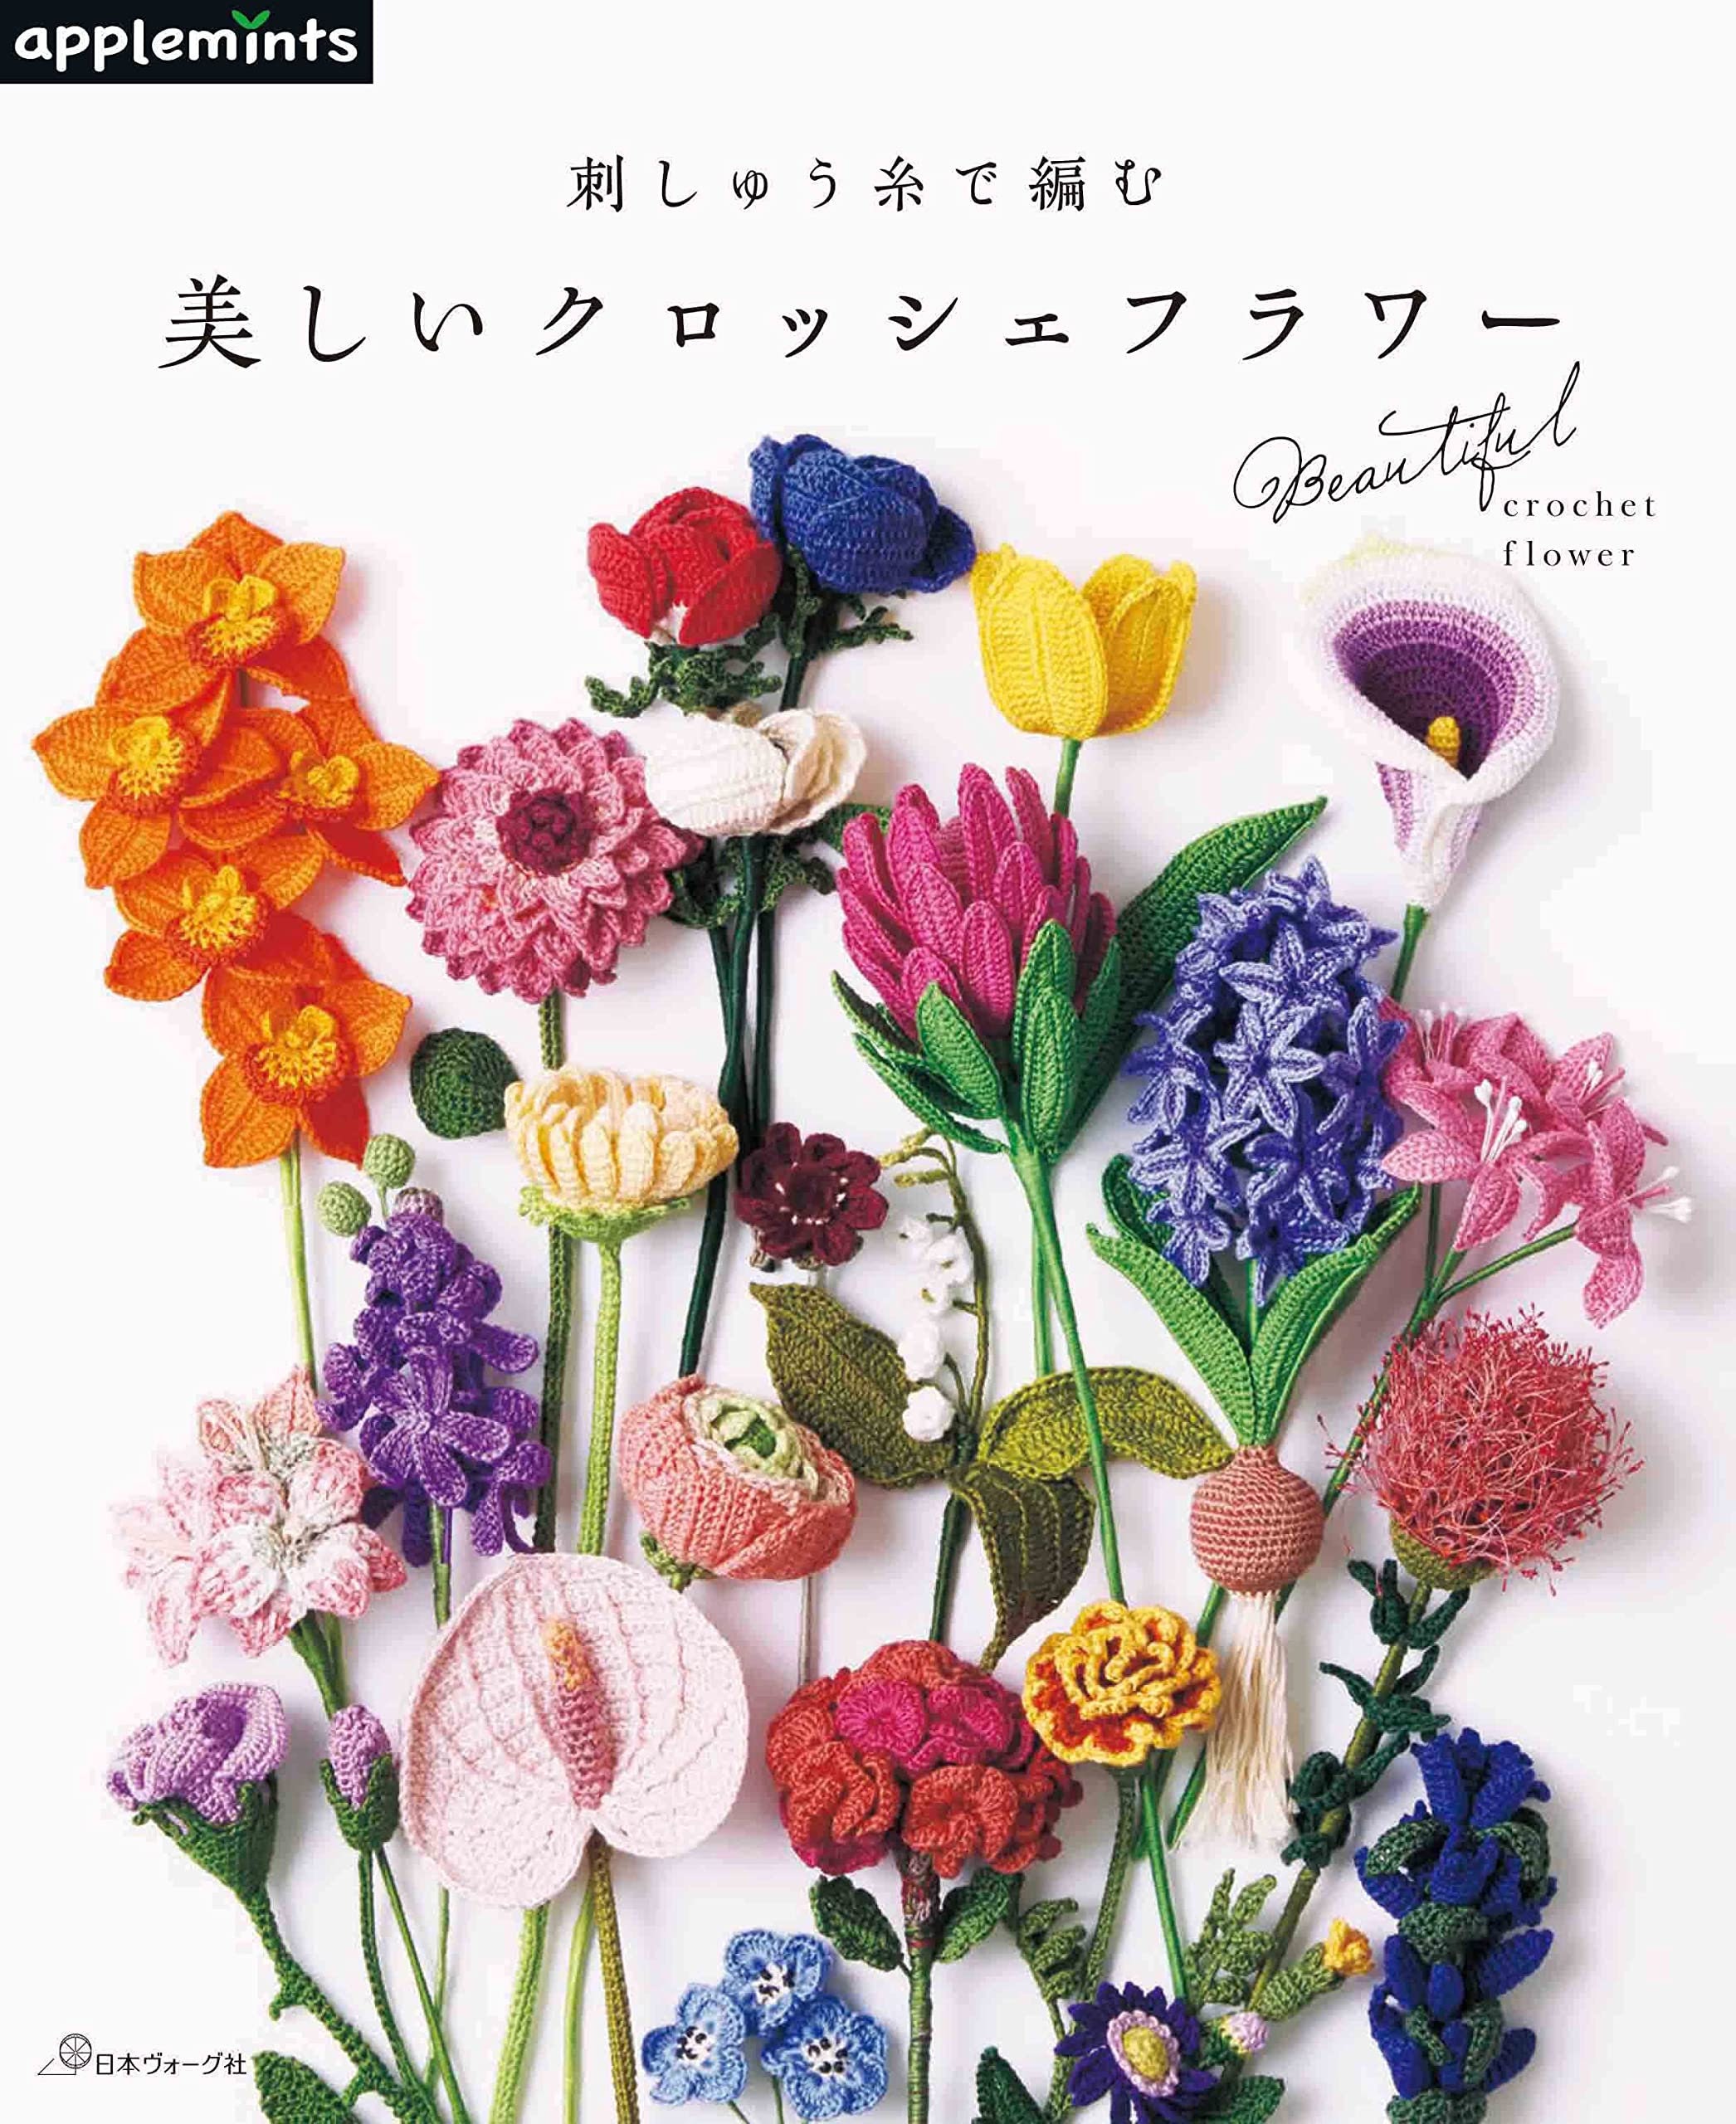 Japanese crochet flowers